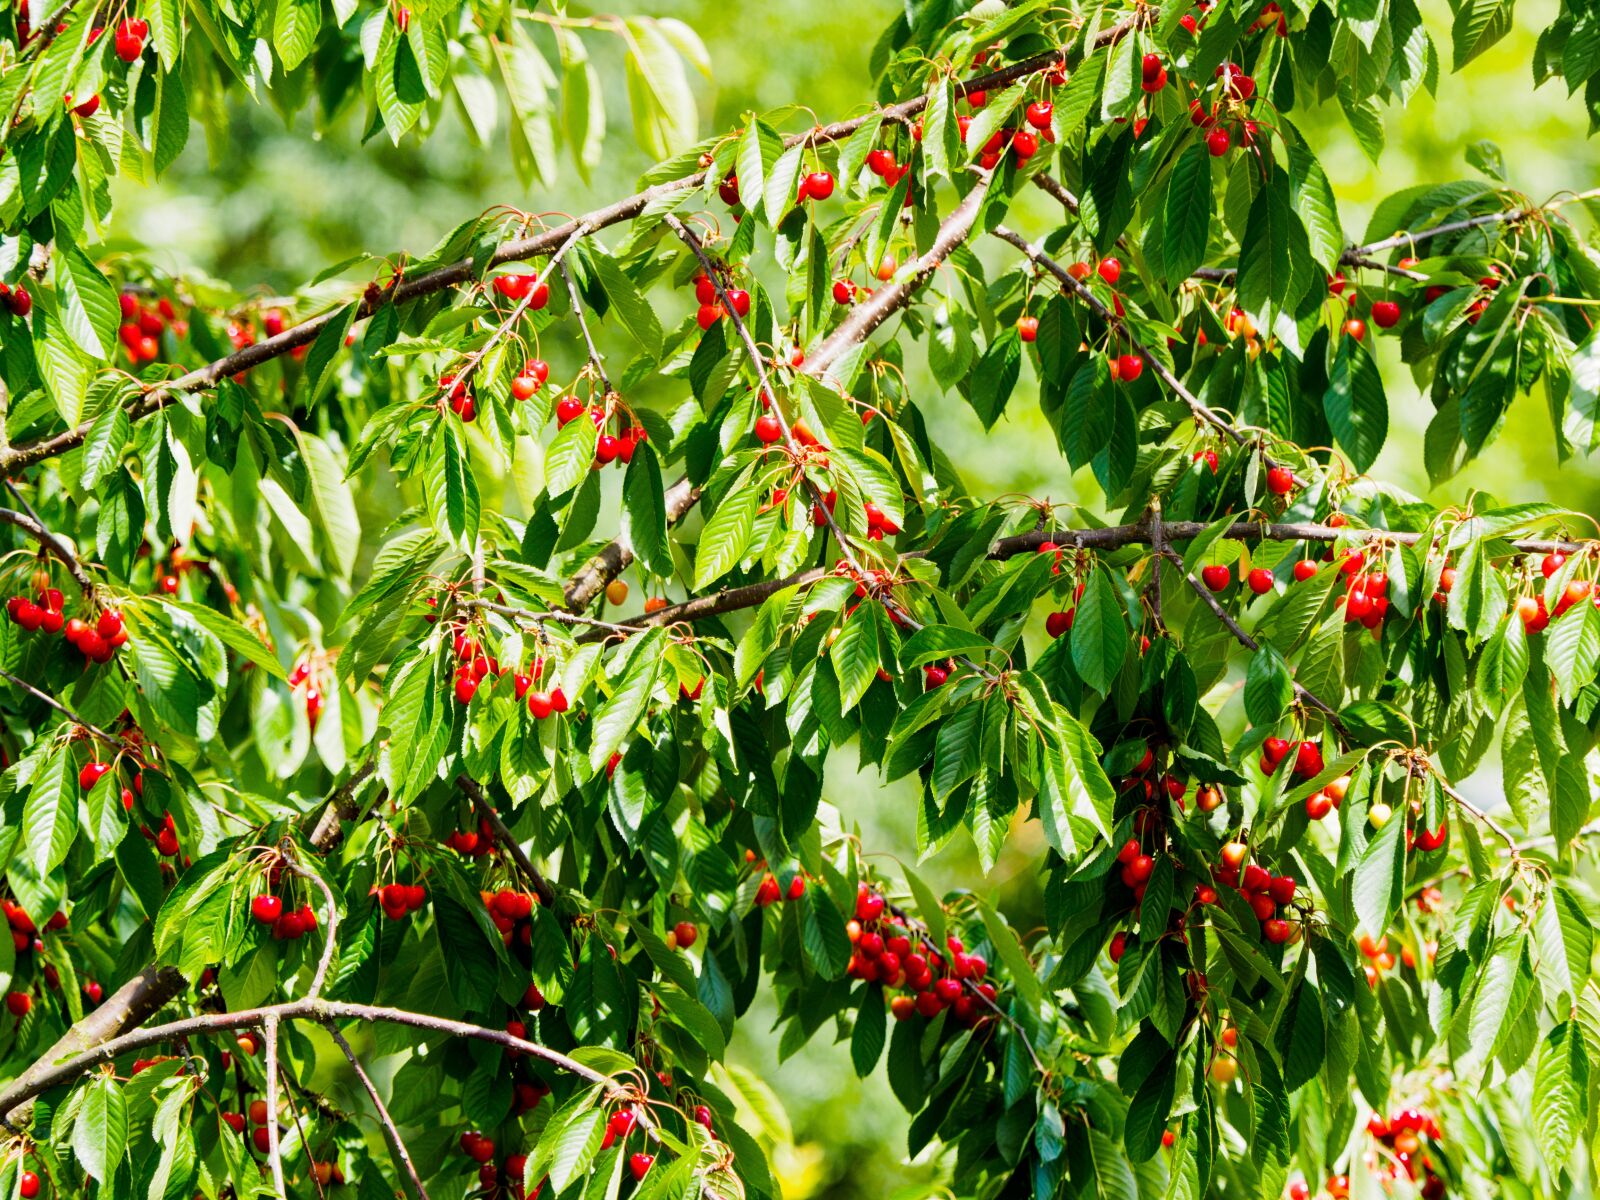 Olympus M.Zuiko Digital ED 40-150mm F2.8 Pro sample photo. Cherries, cherry tree, red photography